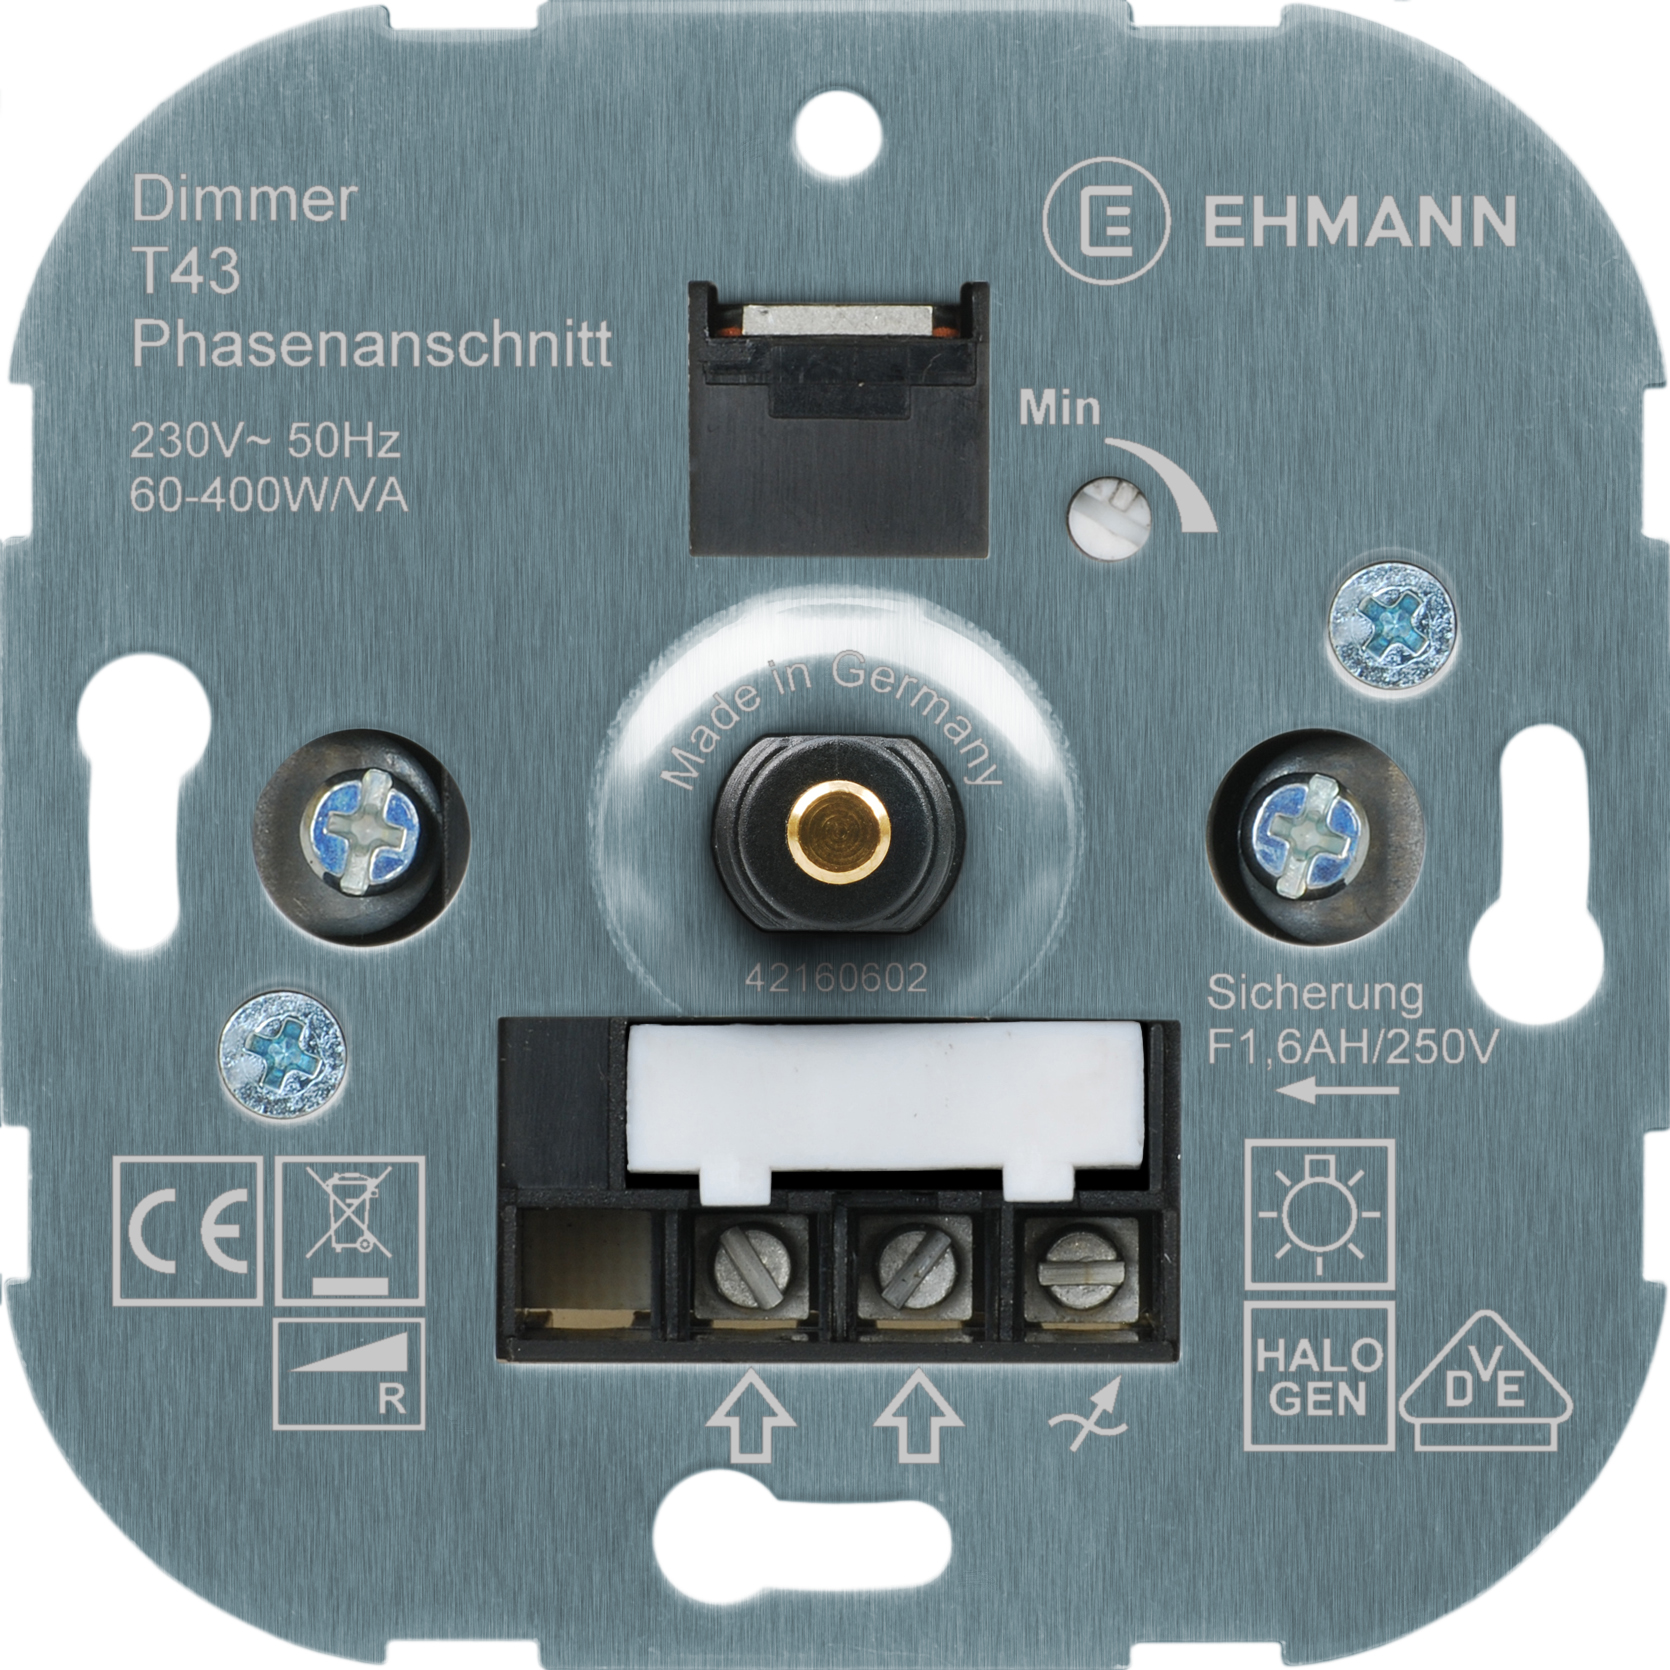 EHMANN Unterputz-Dimmer T43.00, Phasenanschnittdimmer, 230 V, 50 Hz, Leistung: 60-400 W/VA, inkl. Schalterprogramm-Adapter